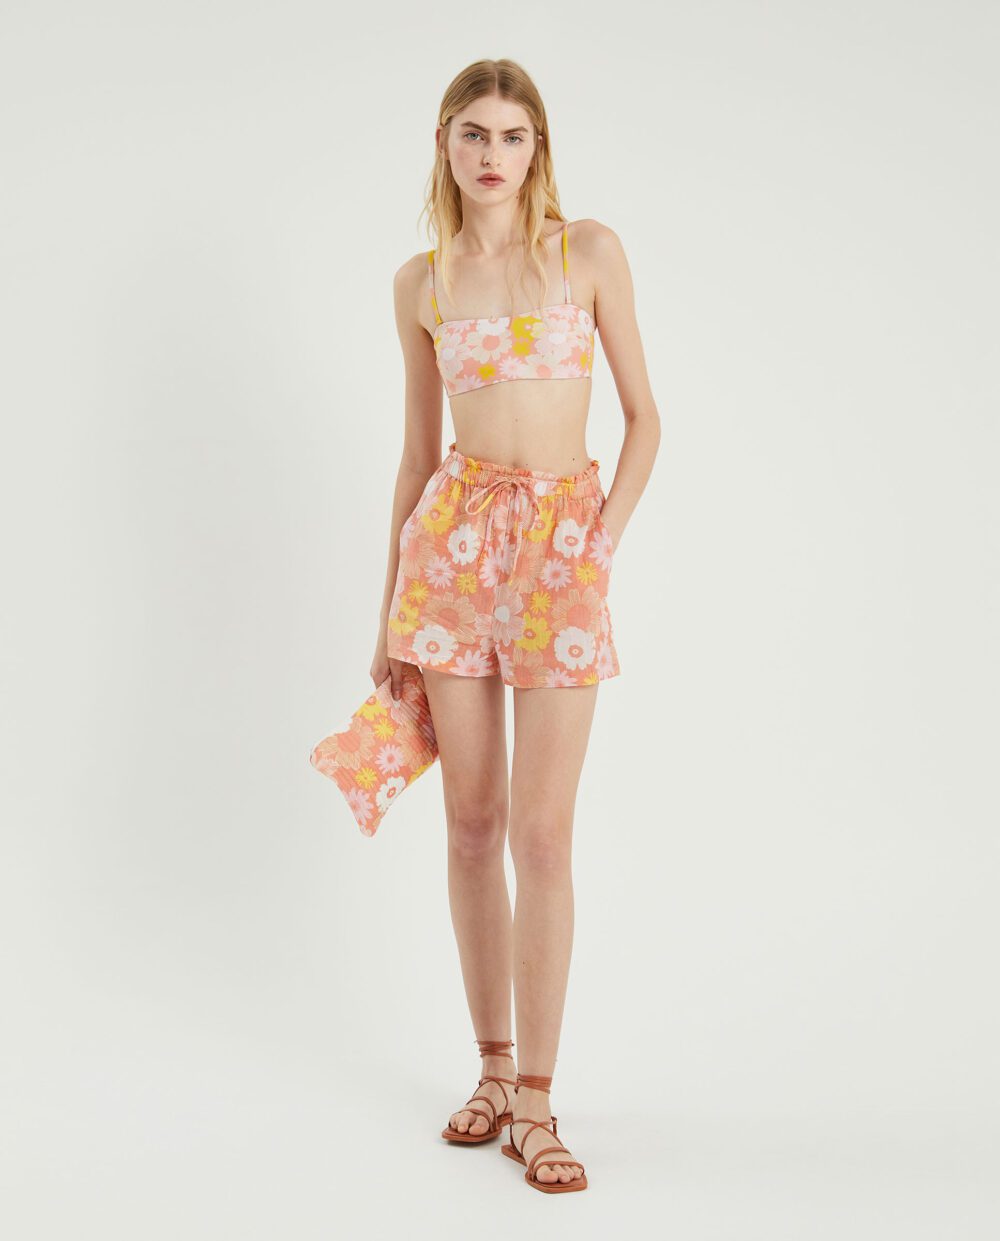 Bikini Top Στράπλες Μαγιό Με Ροζ Φλοράλ Σχέδιο Compania Fantastica